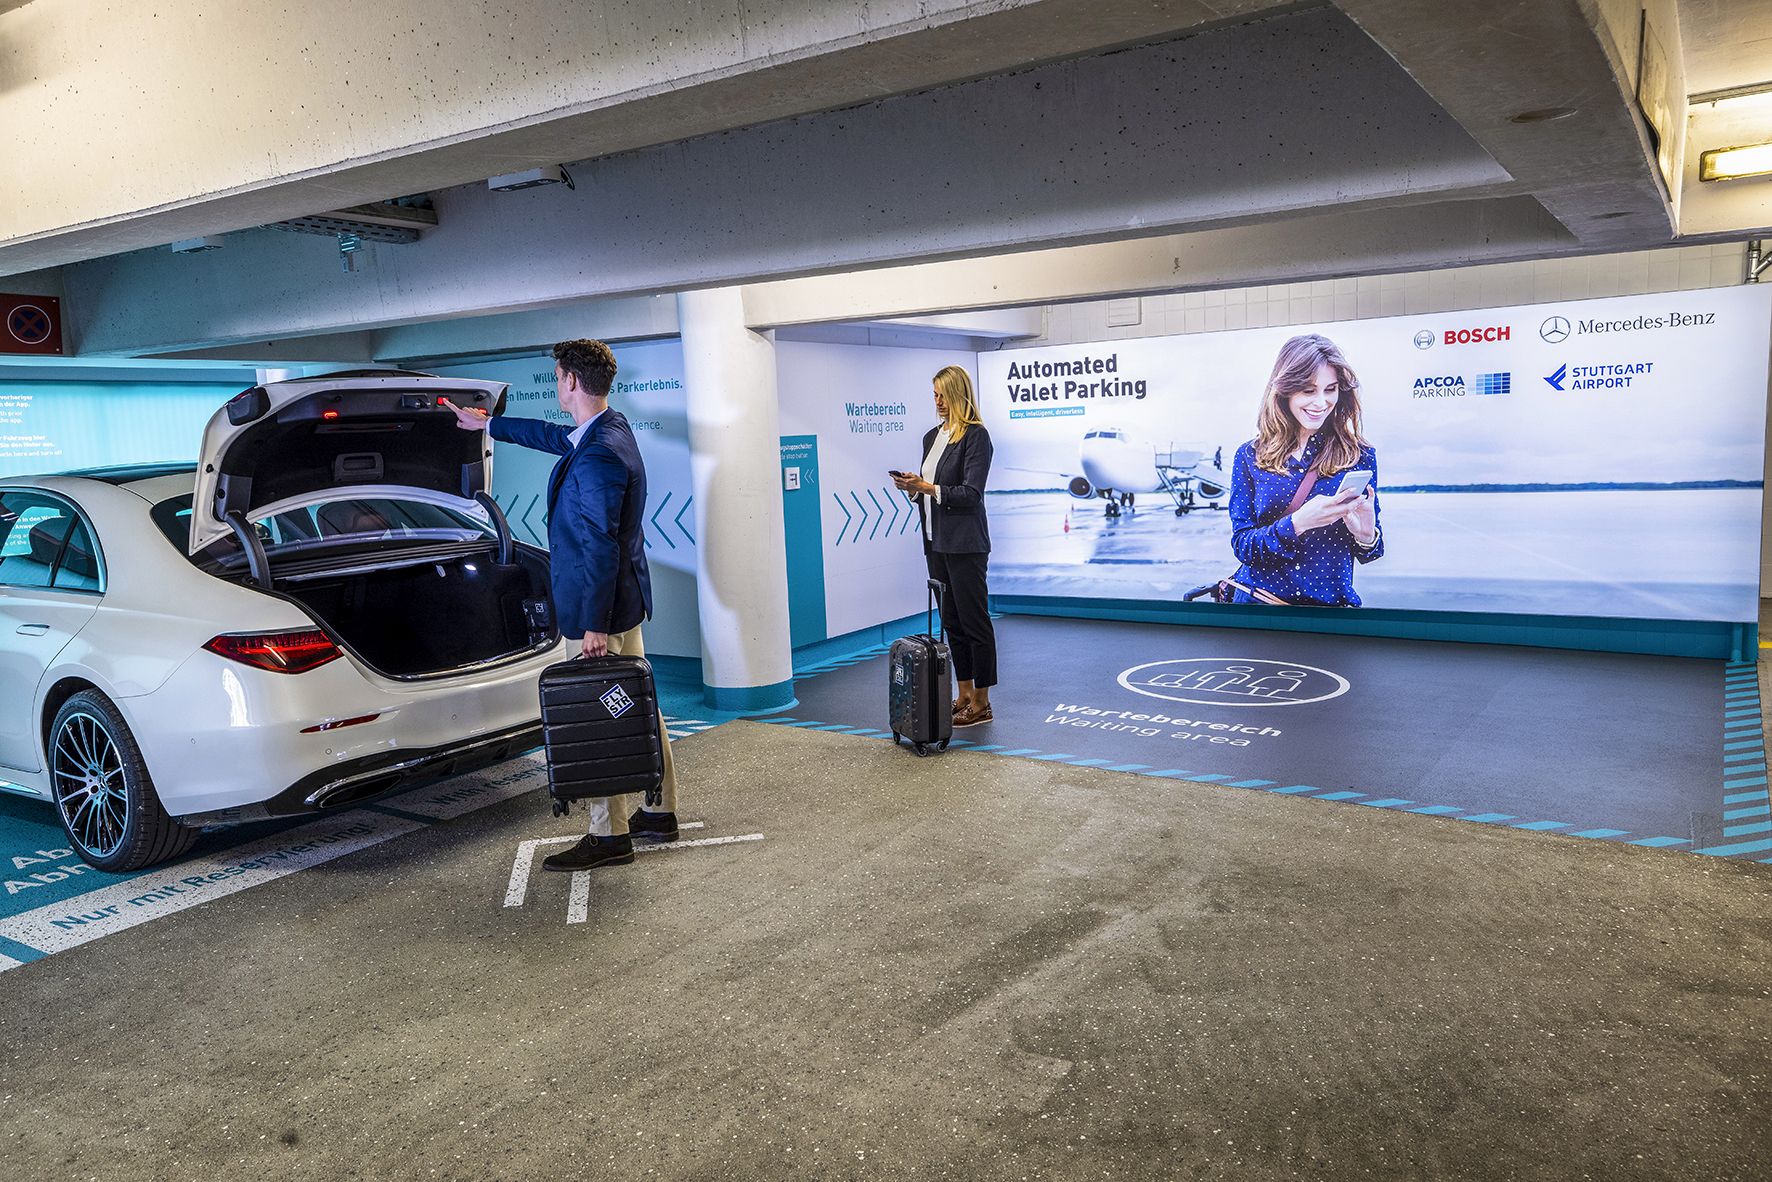 Anteprima mondiale: sistema di parcheggio a guida autonoma Bosch e Mercedes-Benz approvato per uso commerciale